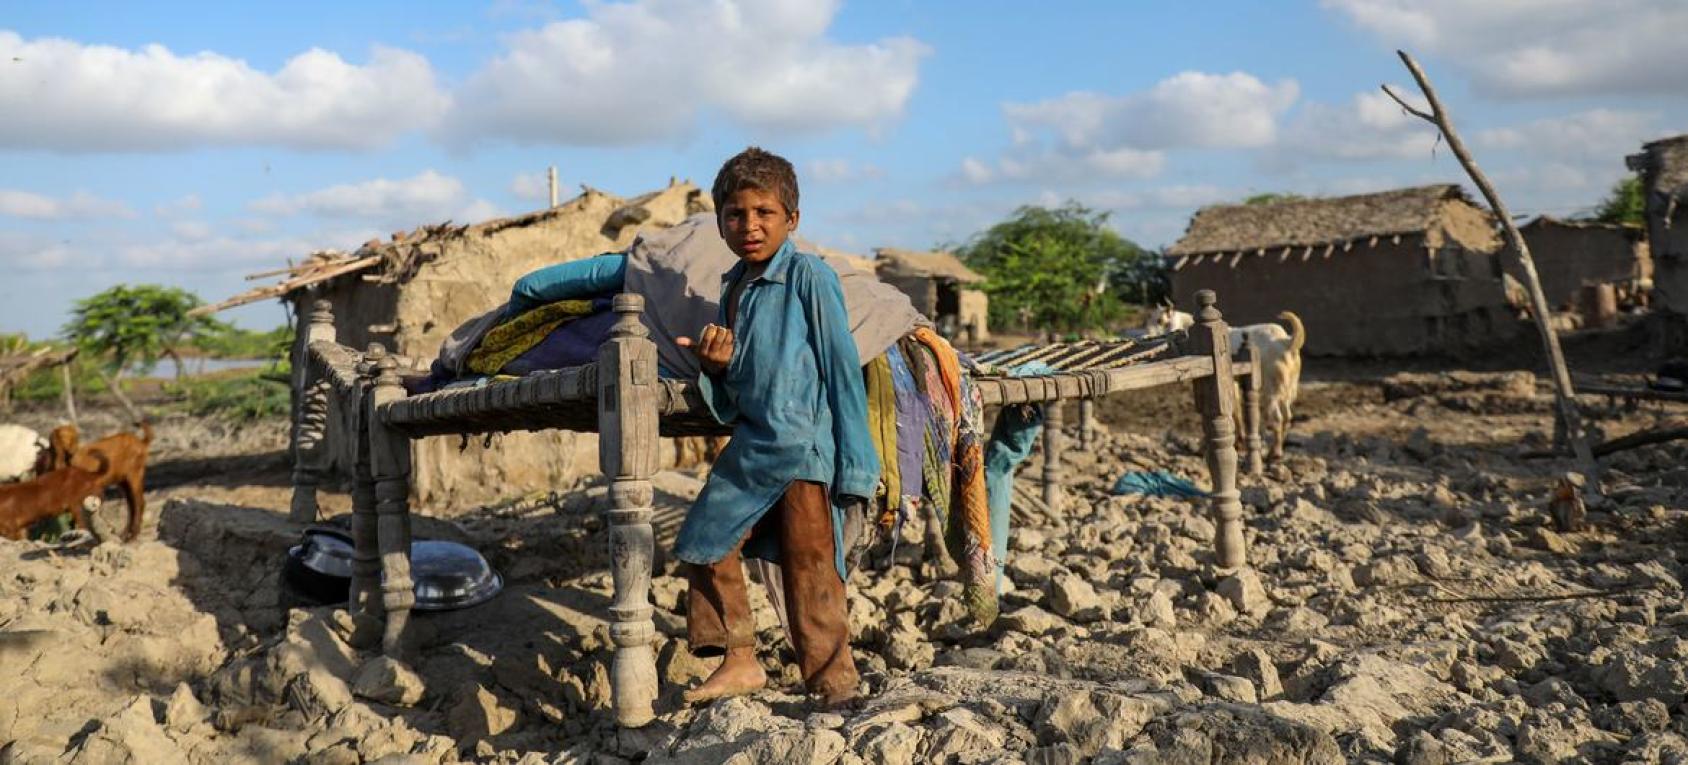 Мальчик стоит на руинах собственного дома, разрушенного наводнениями.